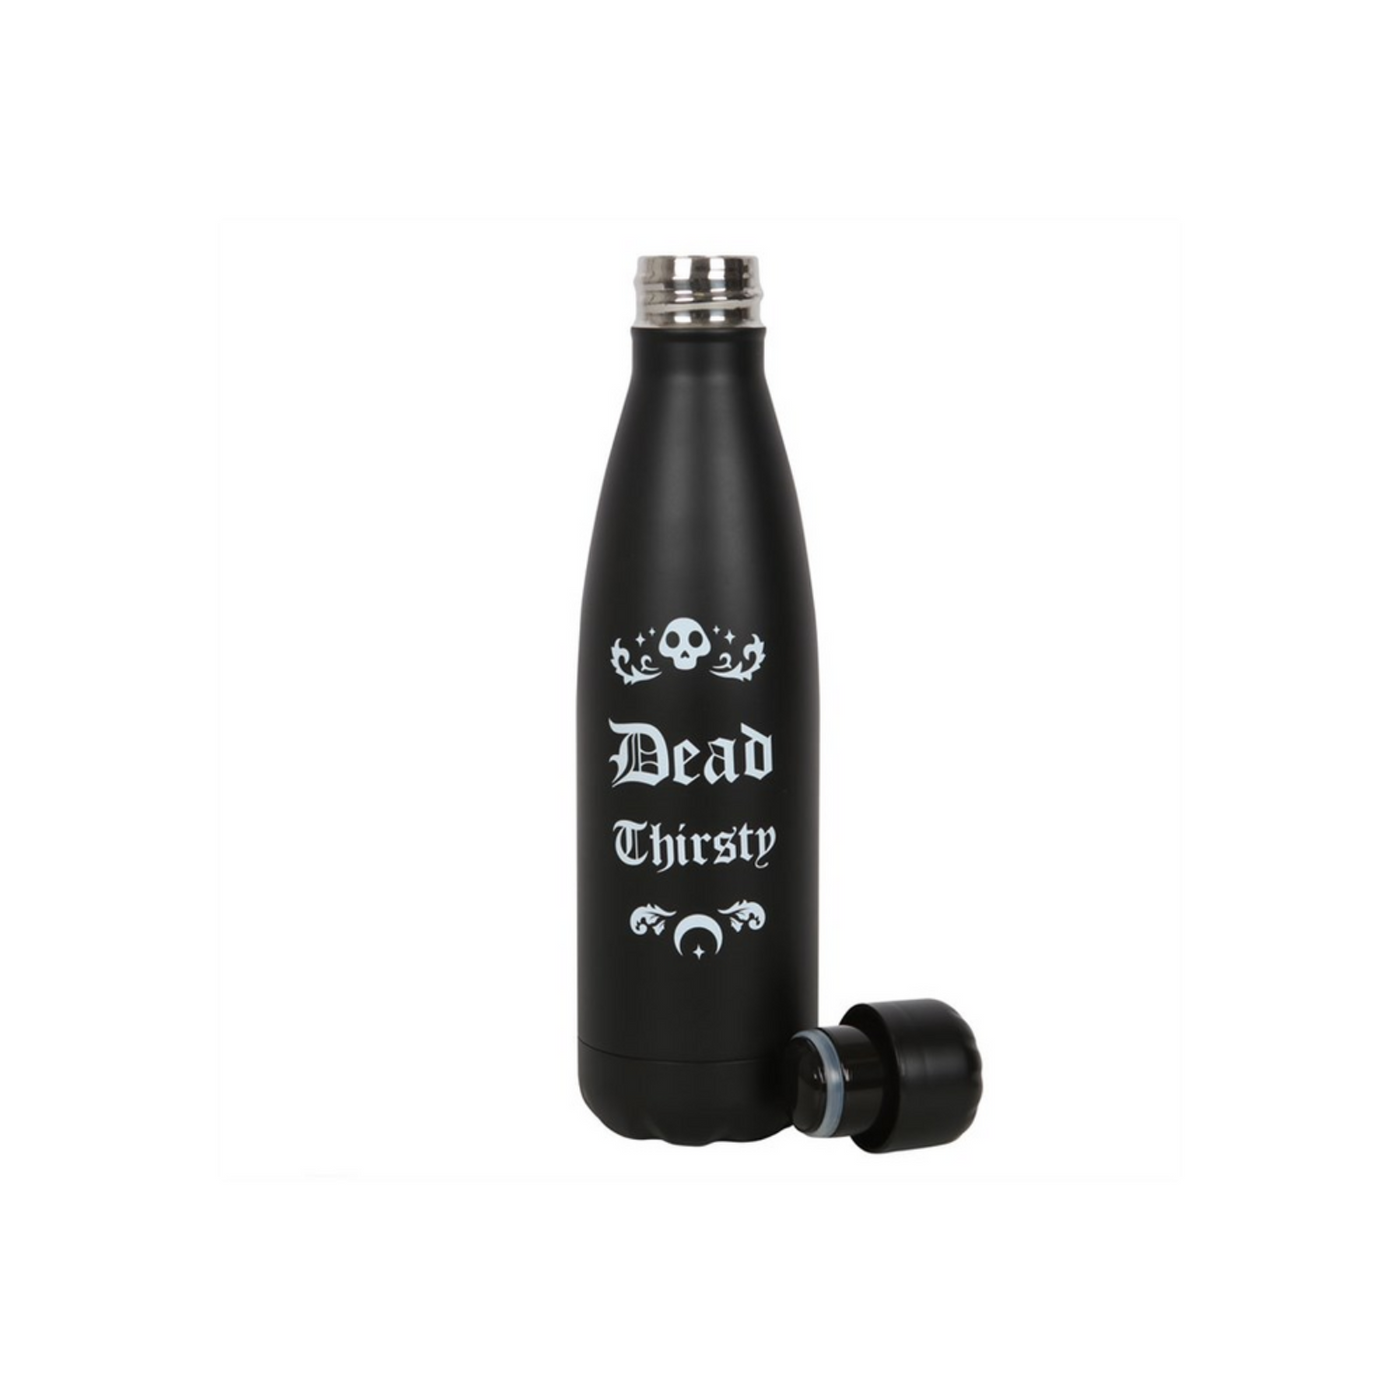 Dead Thirsty Black Metal Skull Printed Halloween Water Bottle.